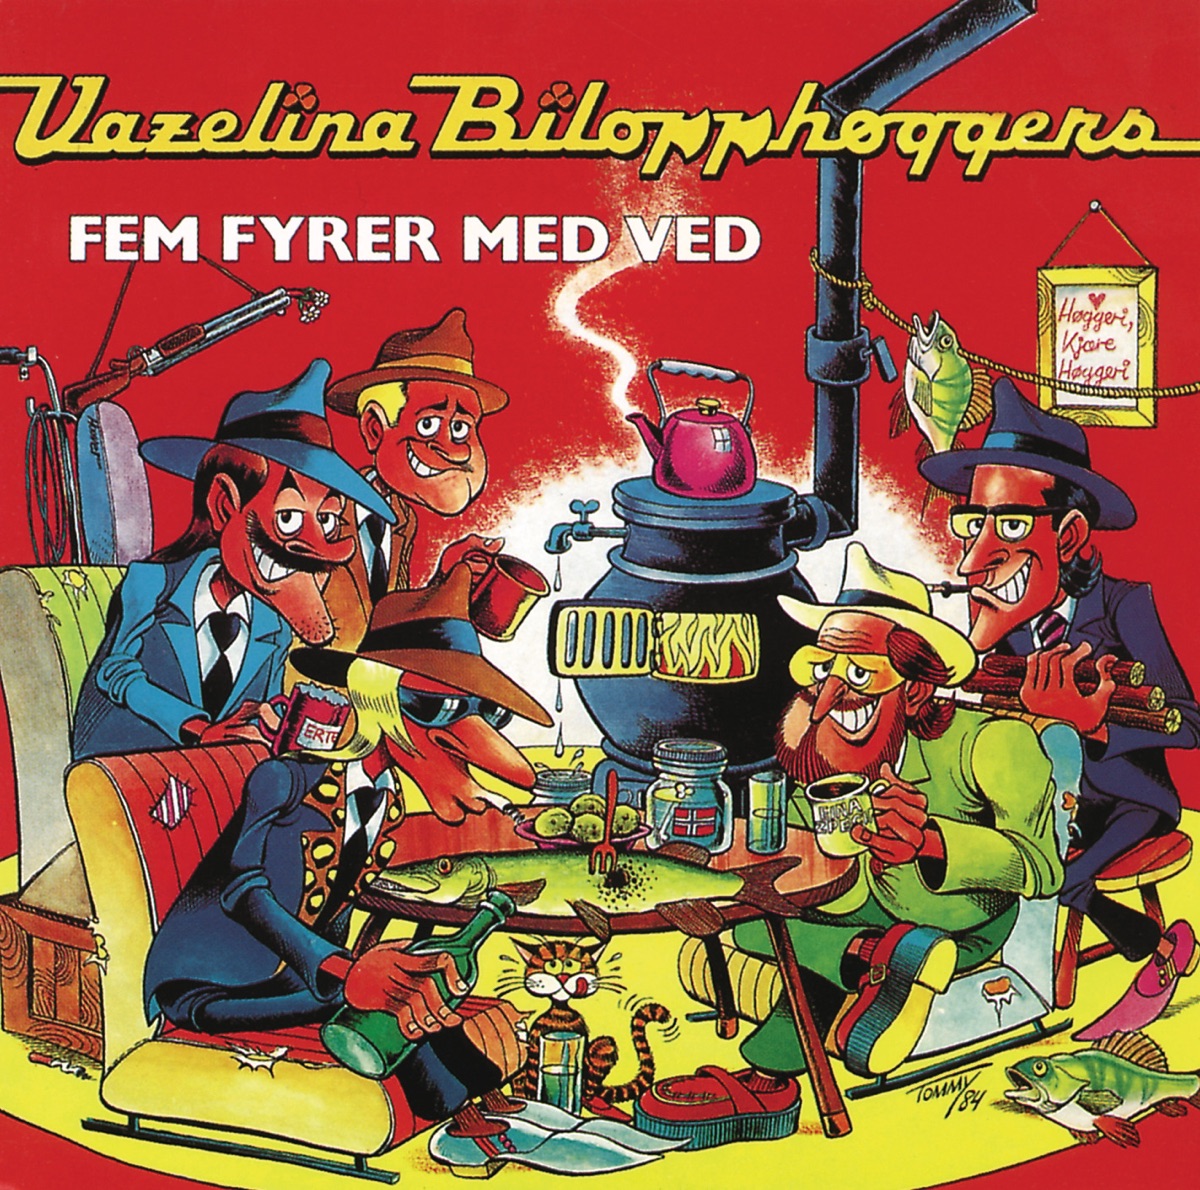 Full Behandling by Vazelina Bilopphøggers on Music